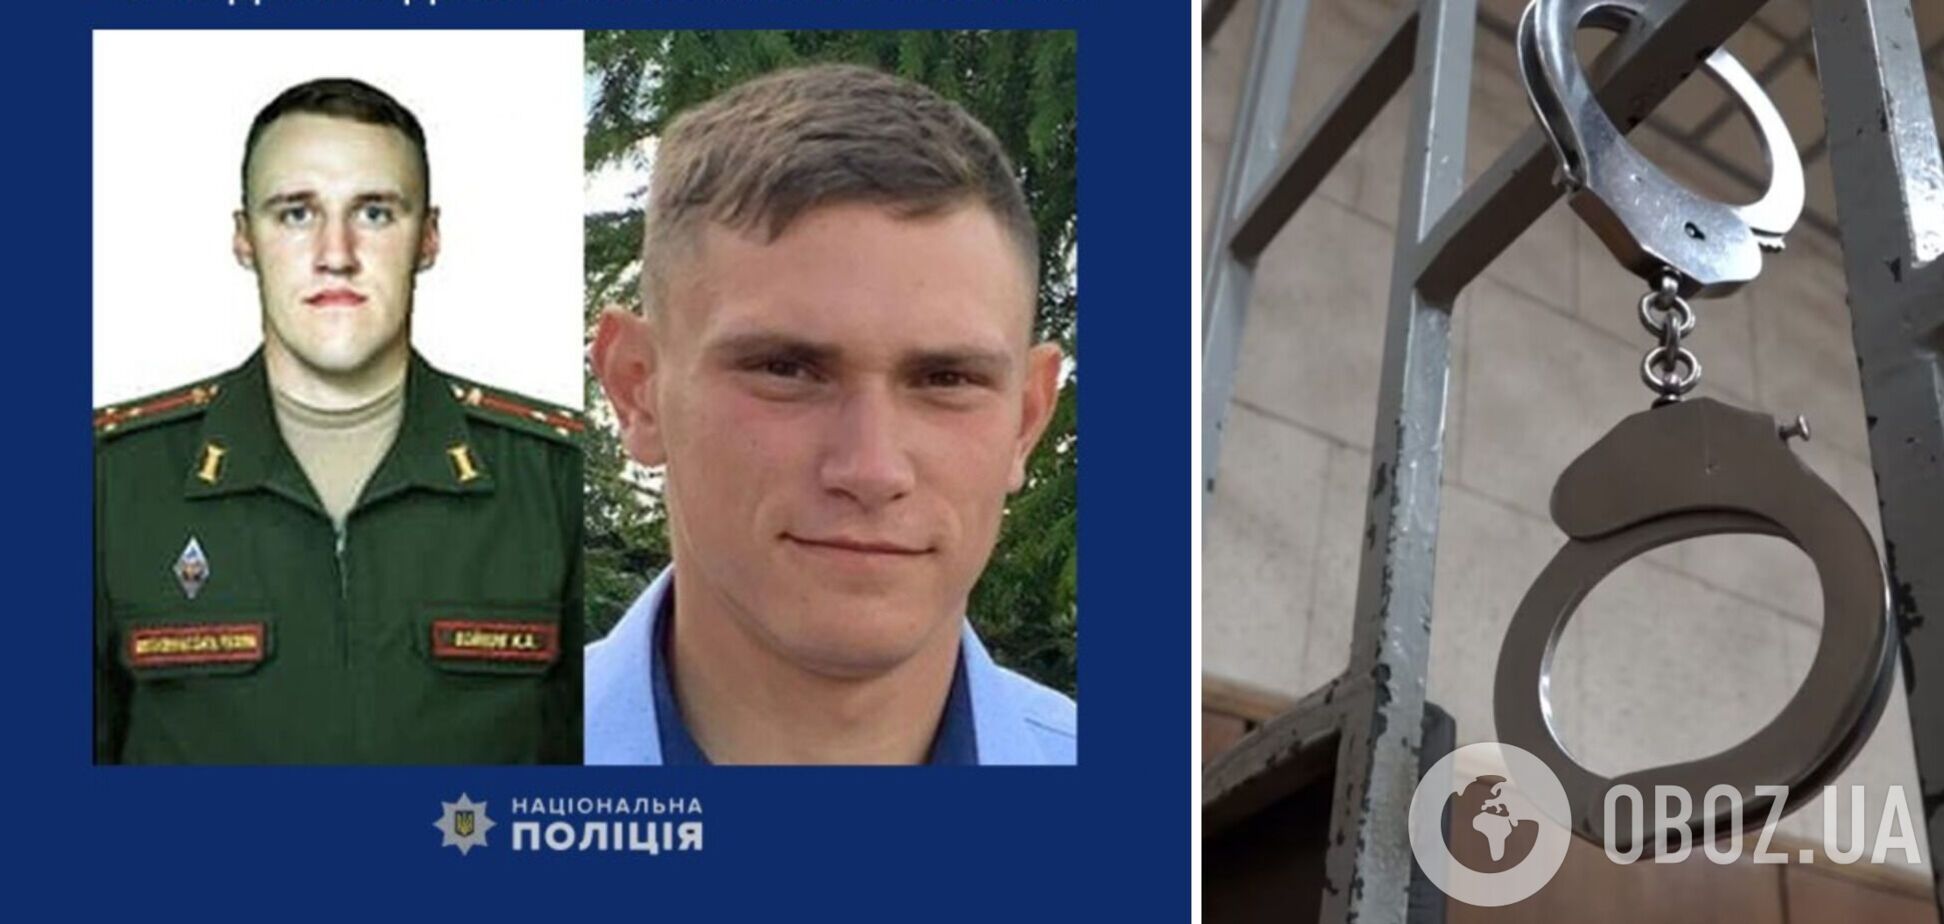 Вбивали українських цивільних: двох російських військових засудили до довічного позбавлення волі. Фото